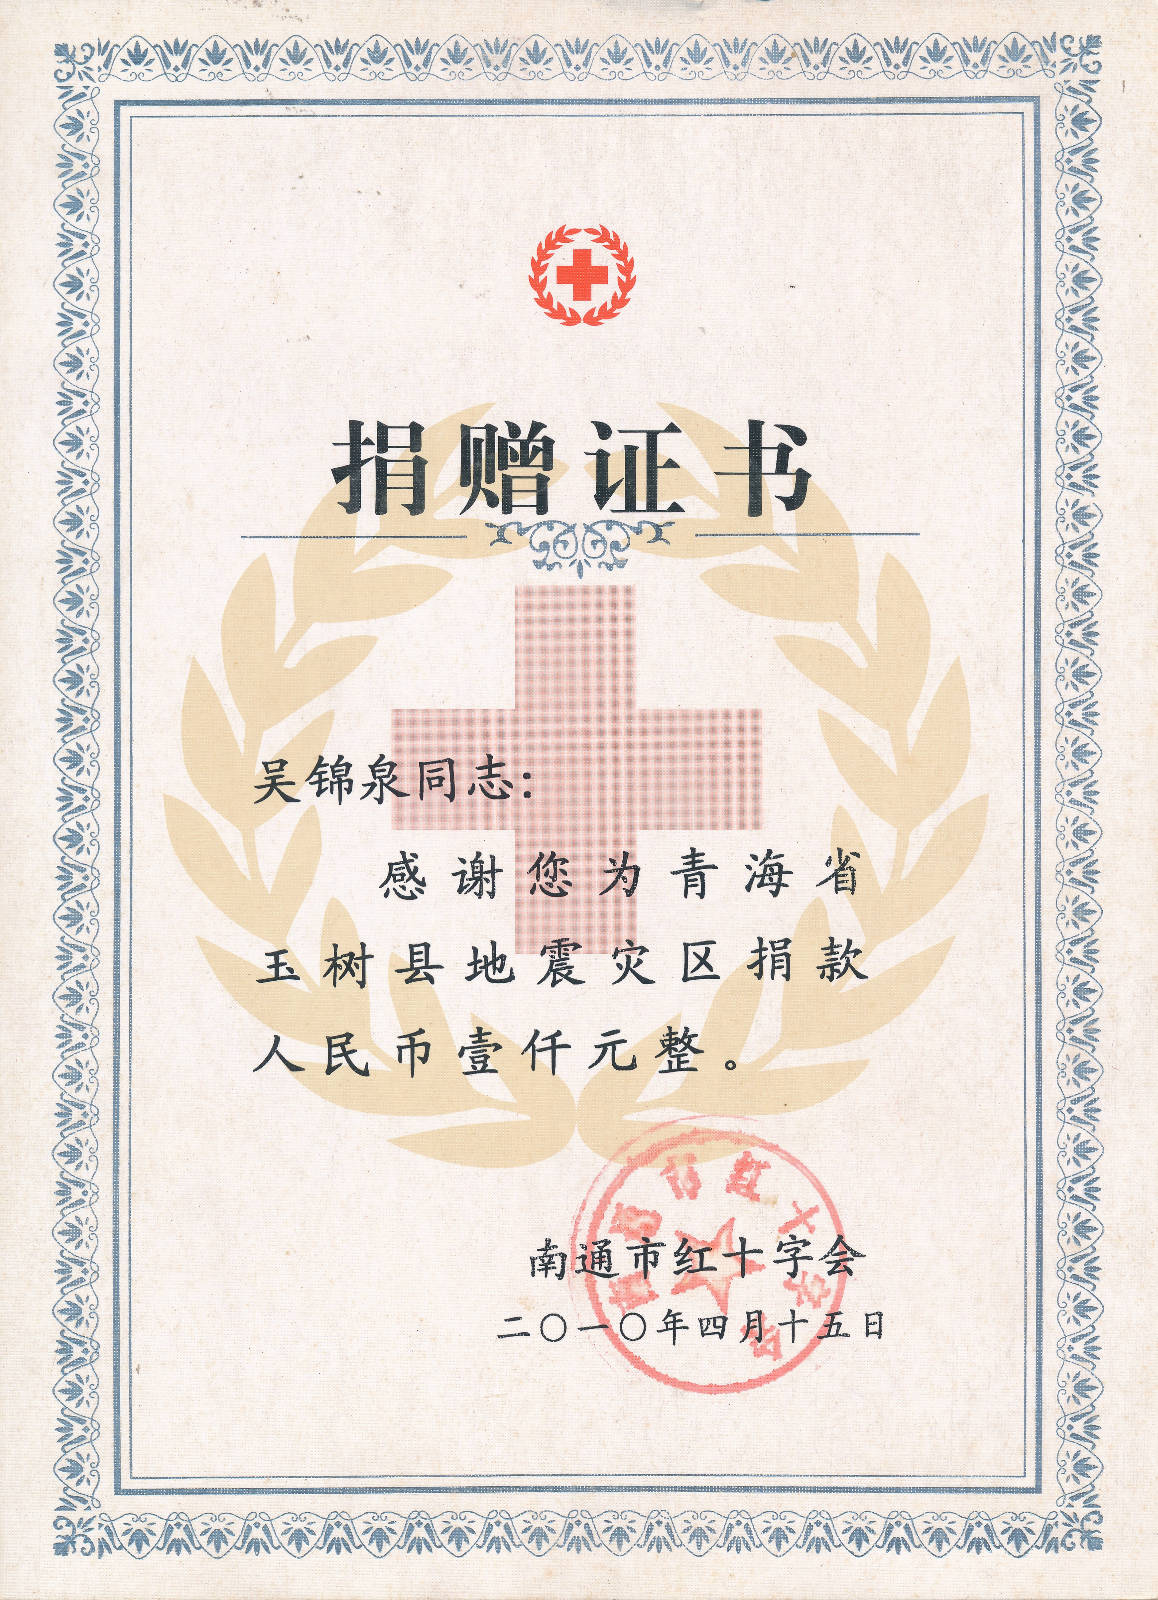 吴锦泉雅安地震捐款捐赠证书